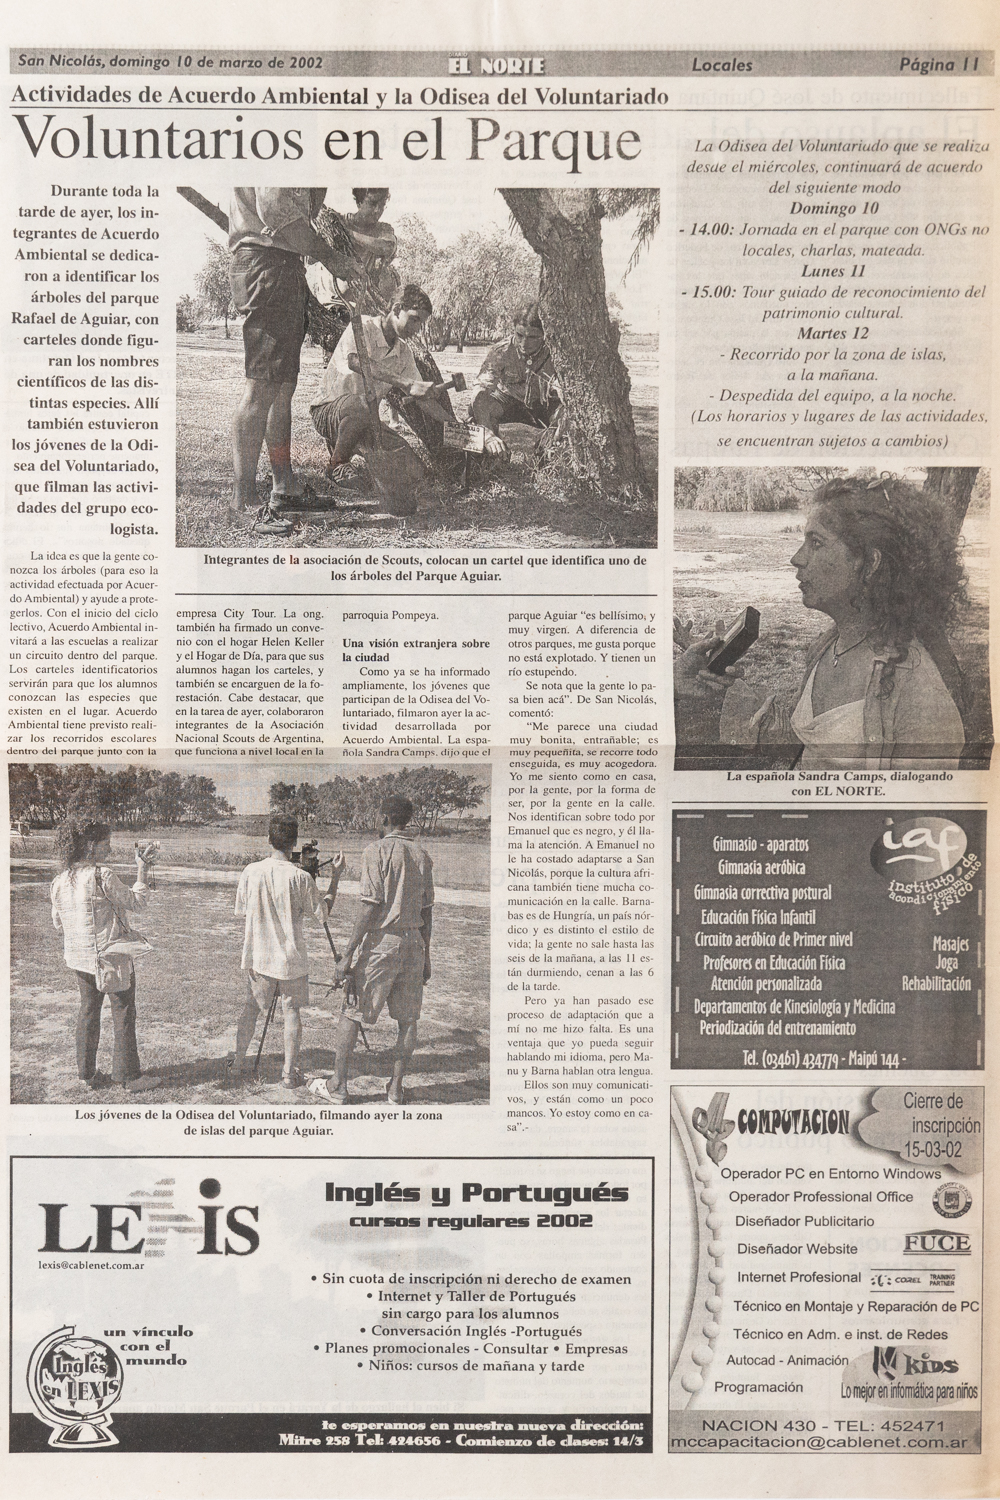 Voluntarios del Parque. Diario El Norte. Mayo 2002. -1